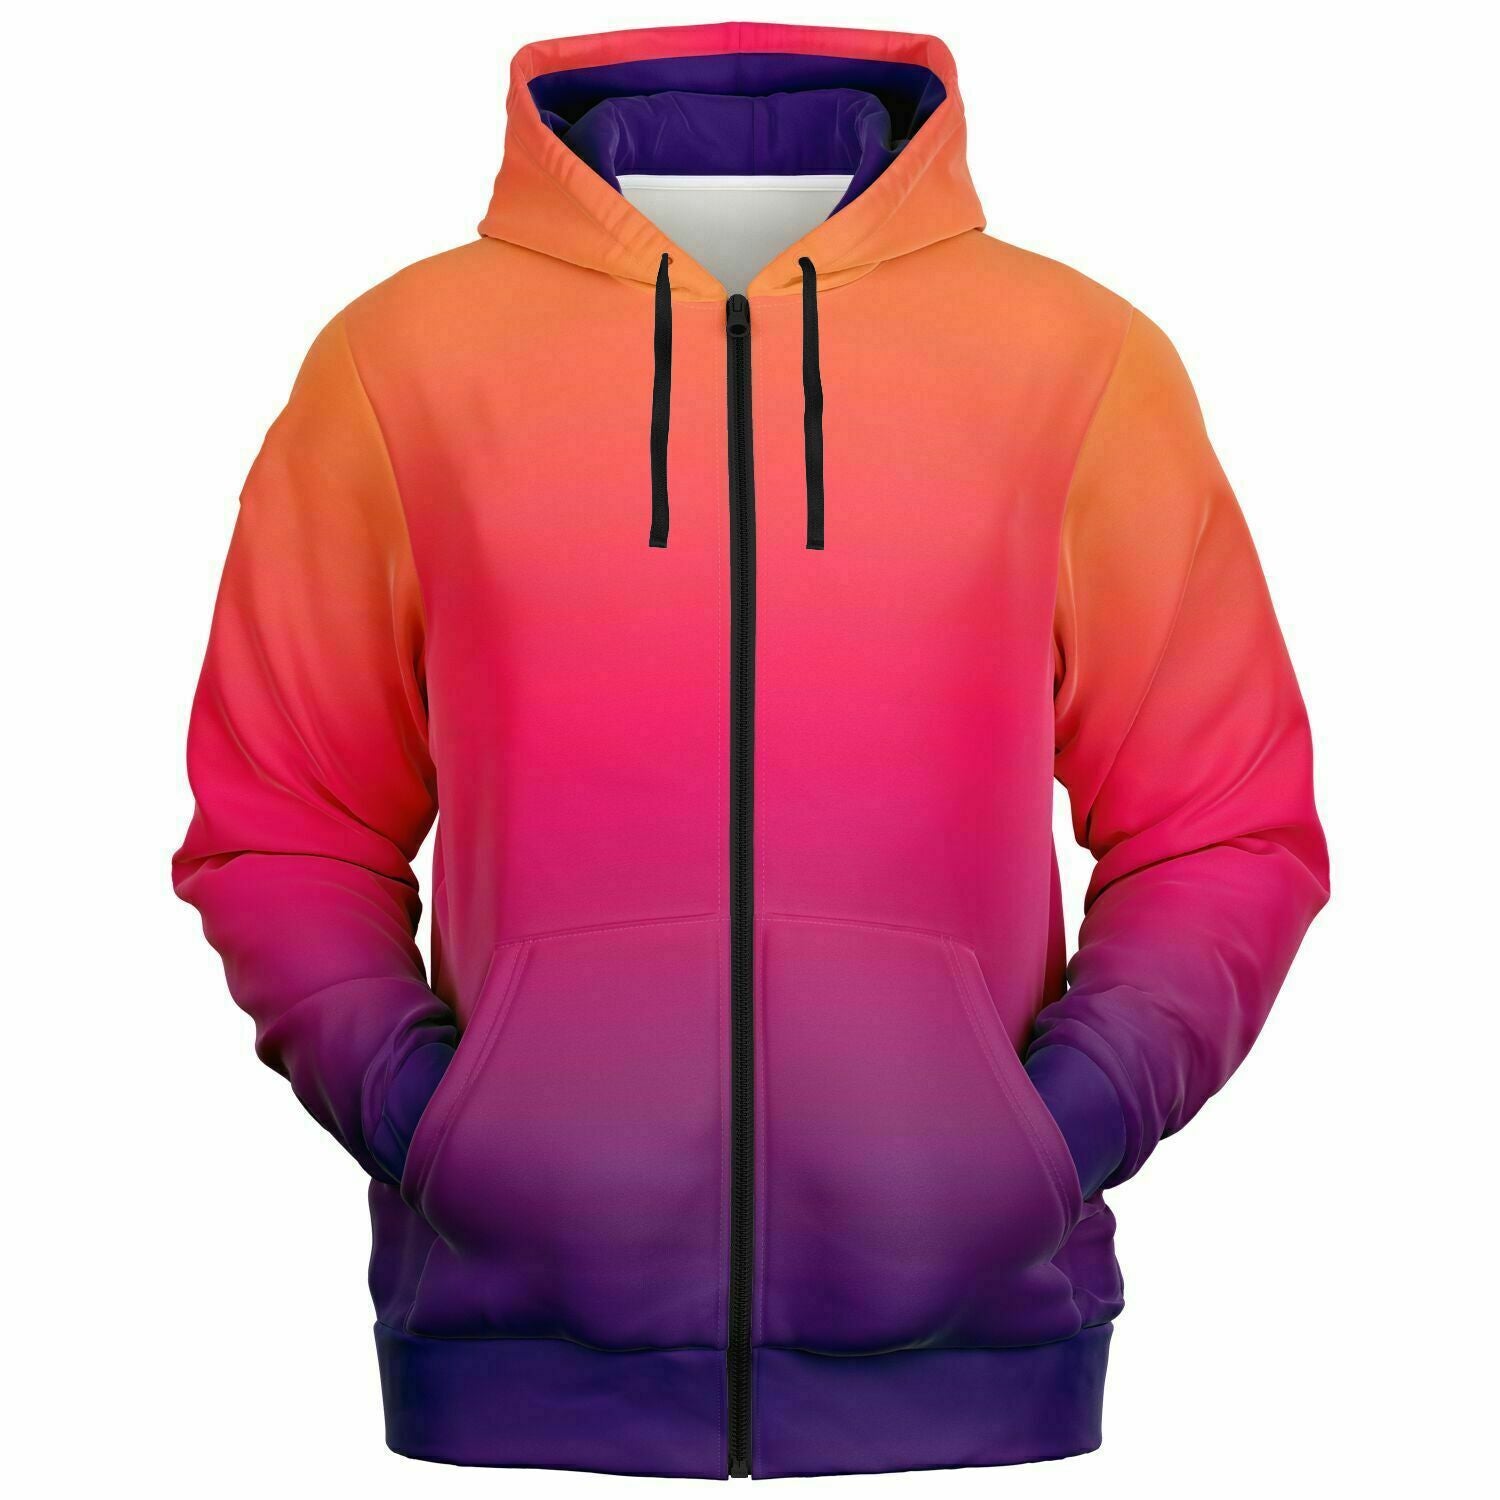 Ombre zip up hoodie, lightweight hoodie, fall hoodie